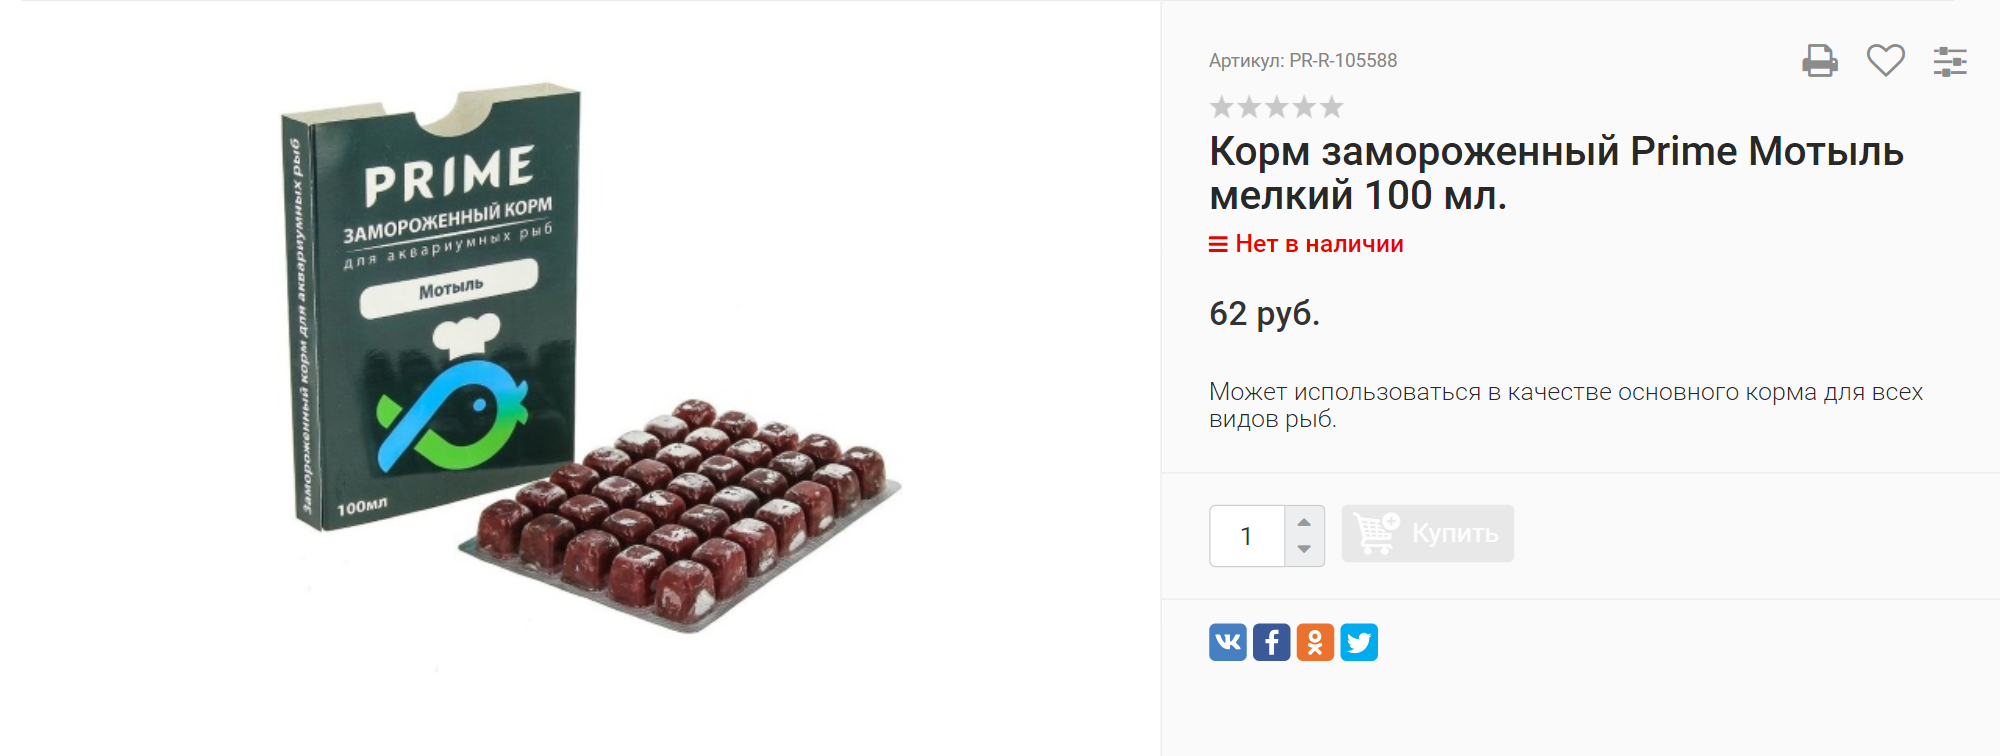 Блистер с порционным кормом дороже, но удобнее, чем целым куском. Источник: dipir.ru